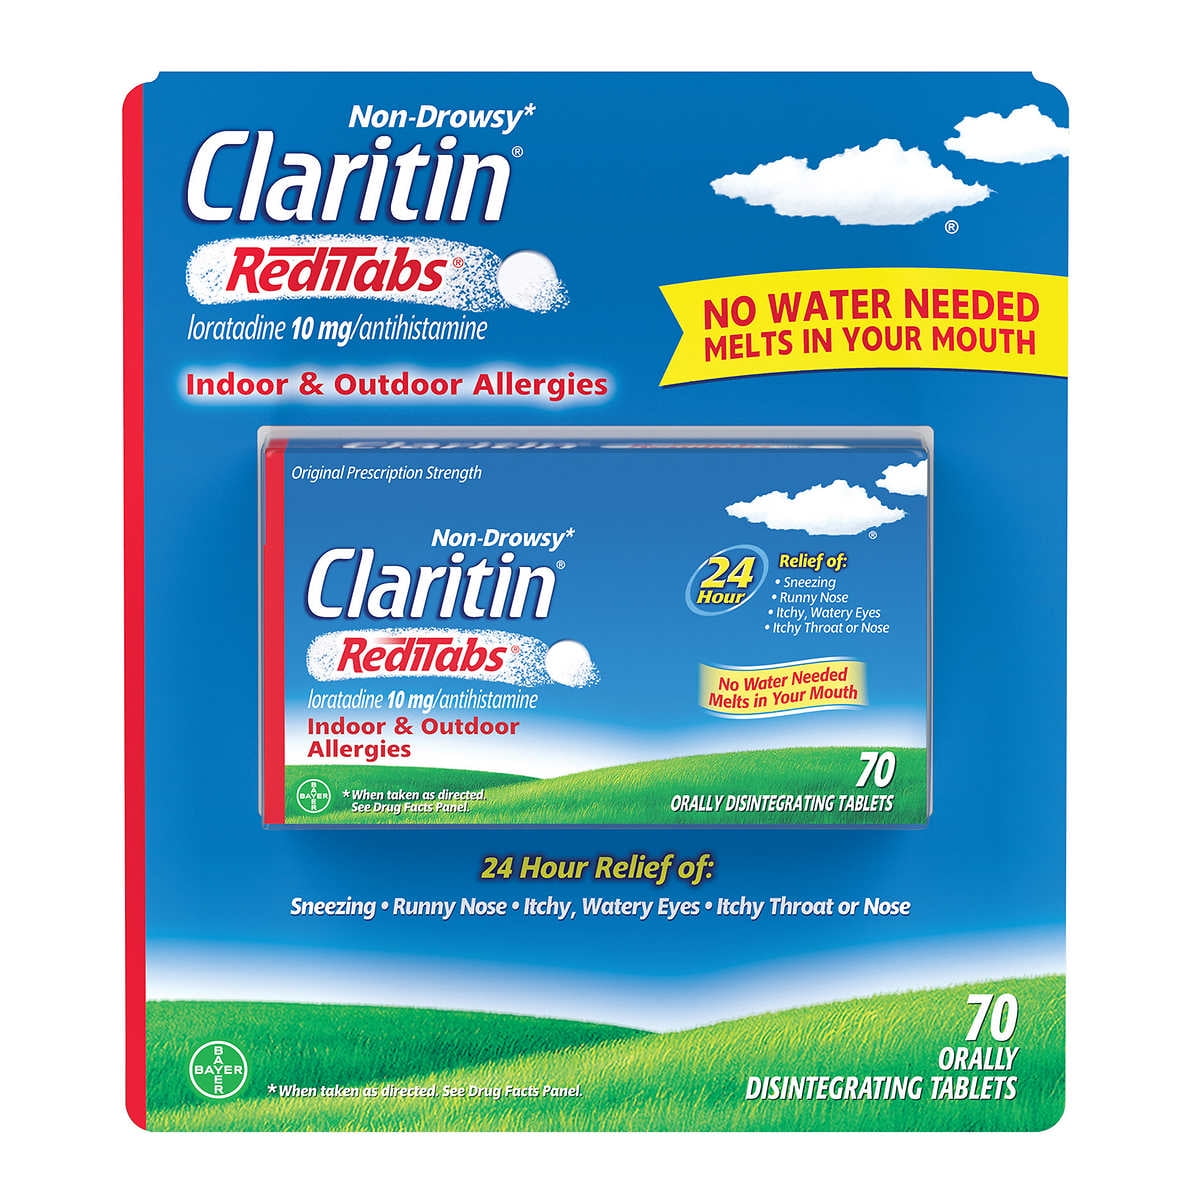 are claritin reditabs non drowsy